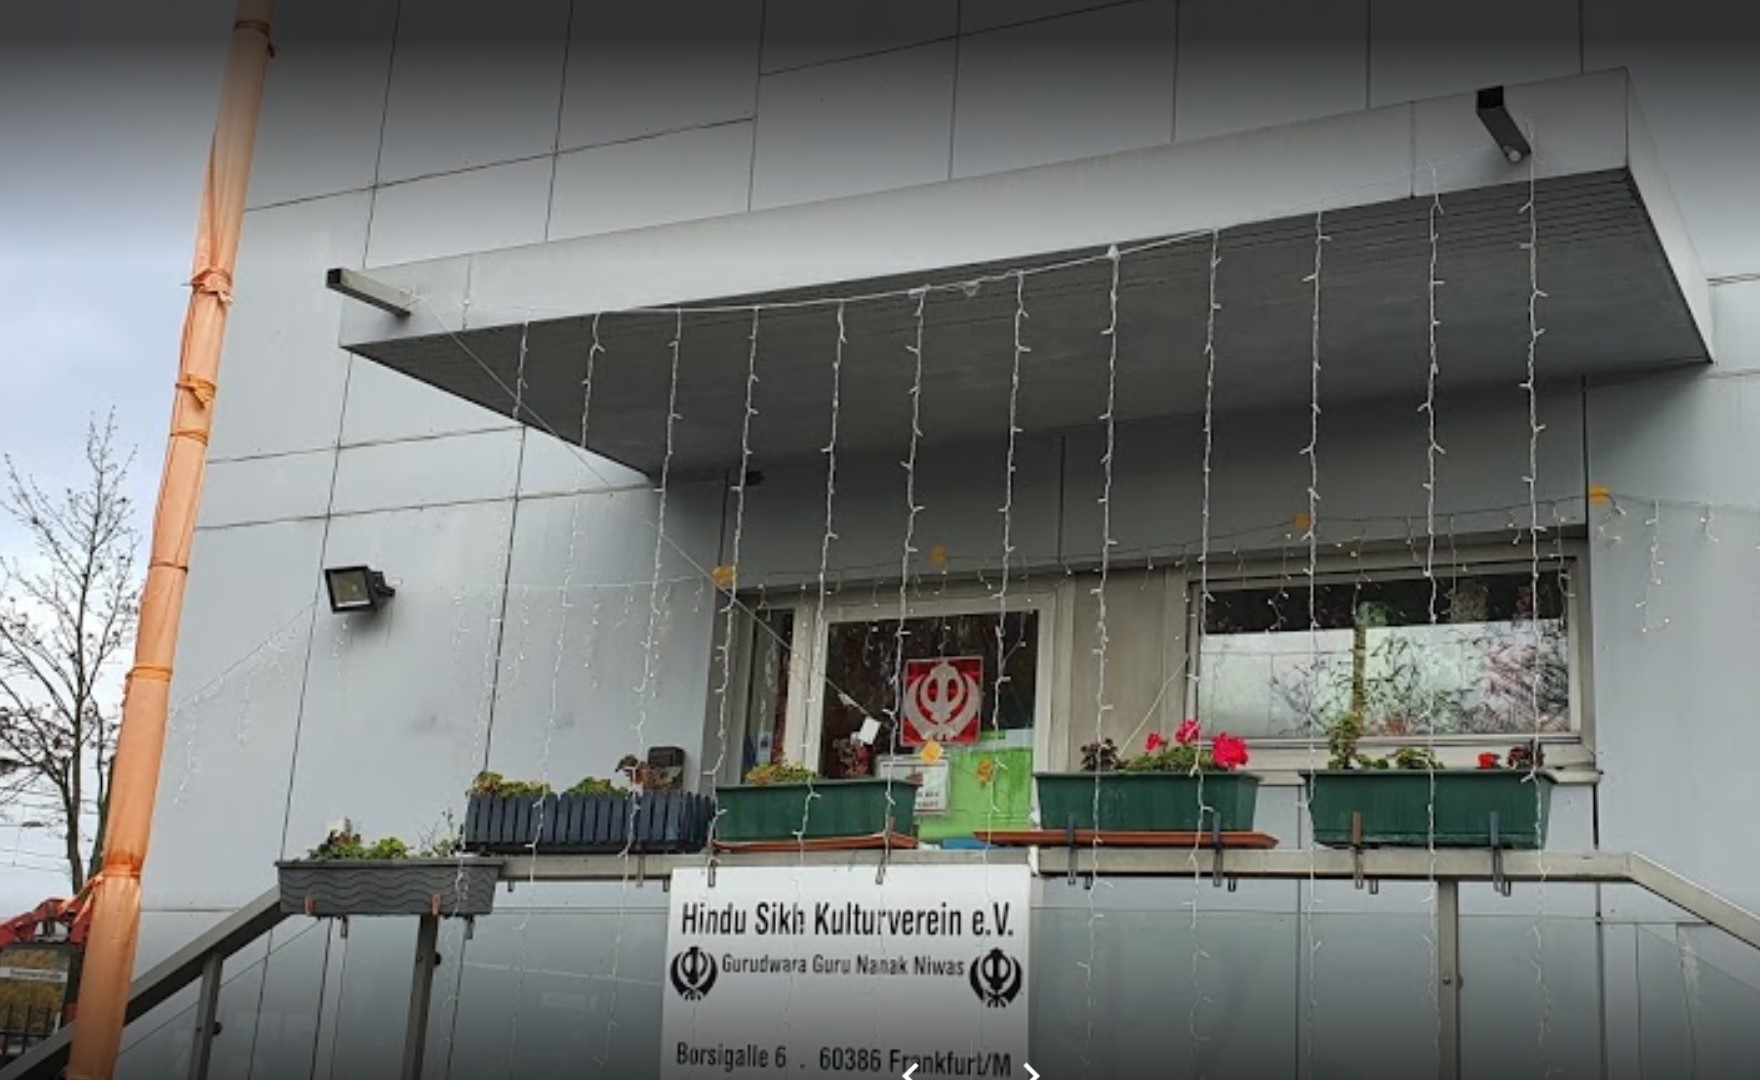 Gurdwara Guru Nanak Nivas – Frankfurt Main